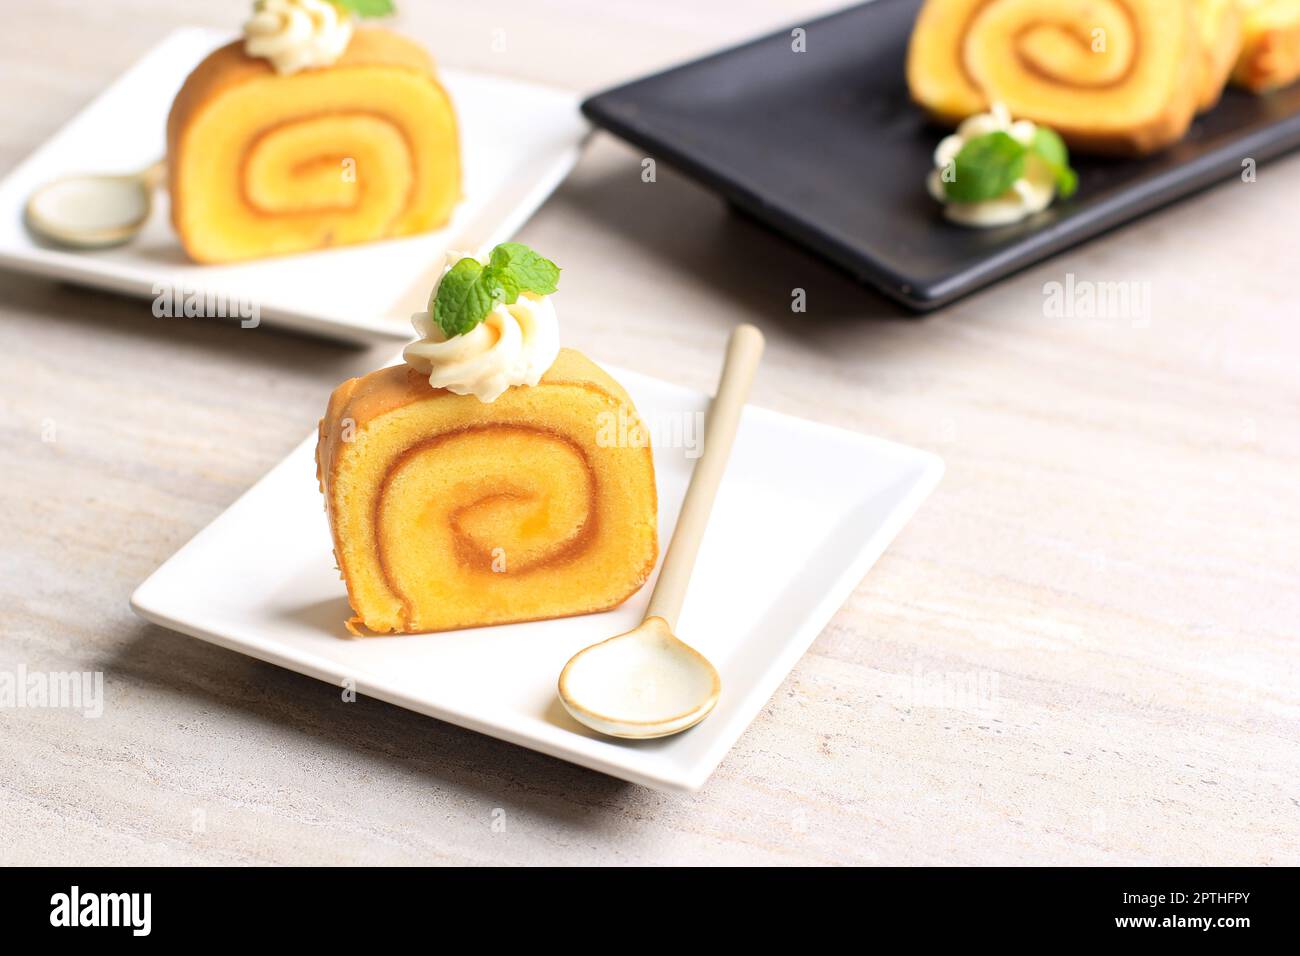 Scheiben Ananaskuchen oder Bolu Gulung Nanas, dünner Kuchen gerollt mit Ananasmarmelade mit Käsezuckercreme oben. Stockfoto